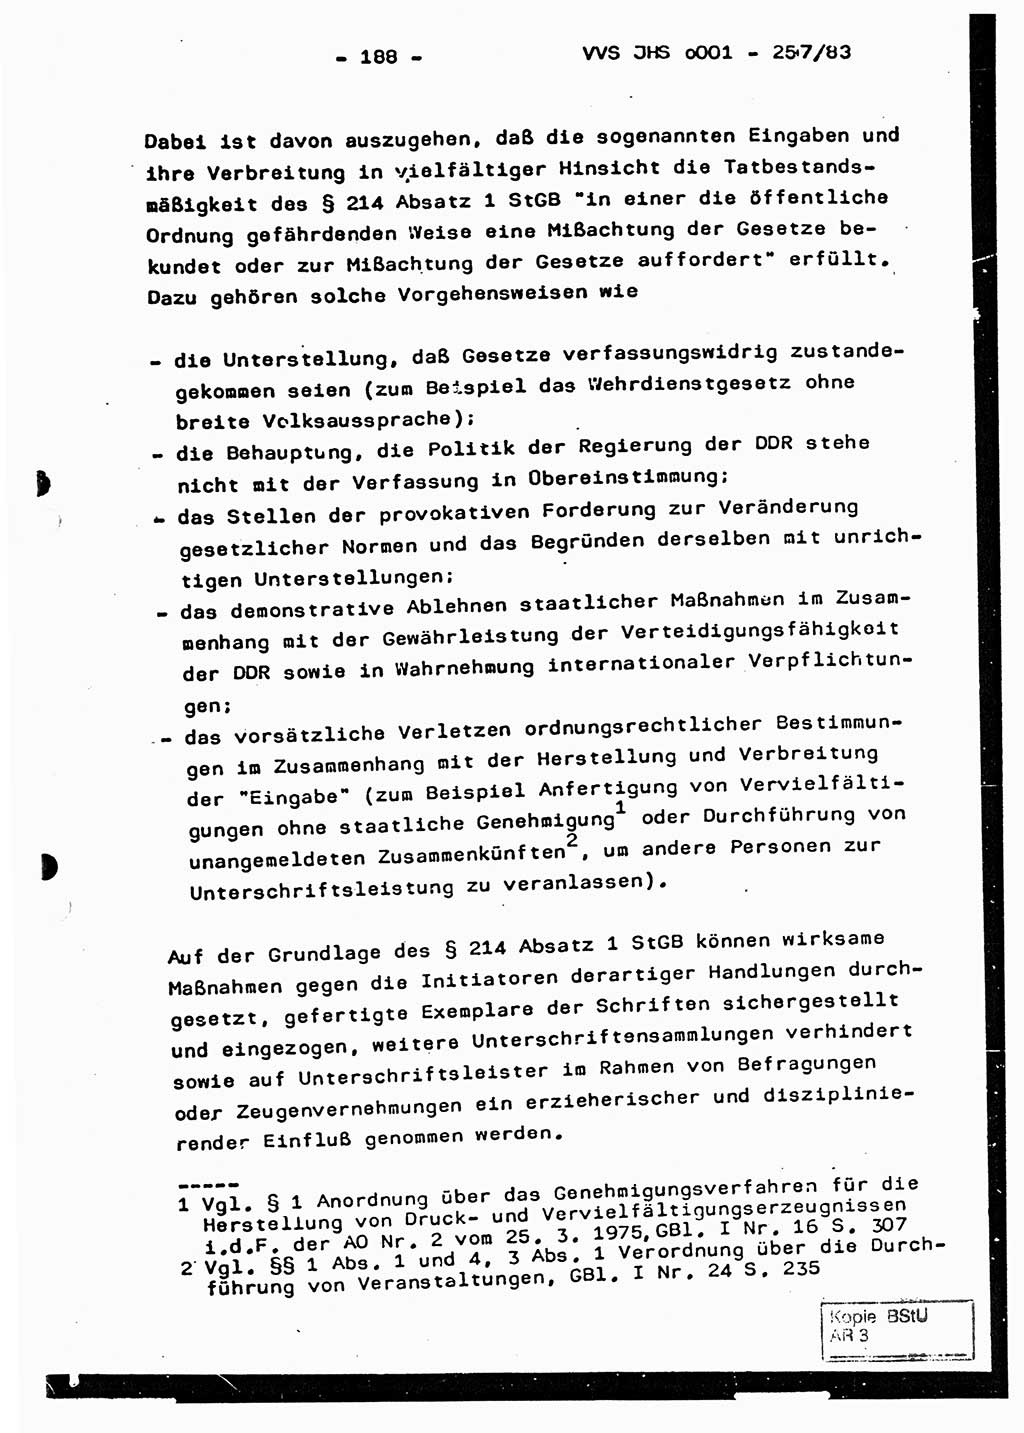 Dissertation, Oberst Helmut Lubas (BV Mdg.), Oberstleutnant Manfred Eschberger (HA IX), Oberleutnant Hans-Jürgen Ludwig (JHS), Ministerium für Staatssicherheit (MfS) [Deutsche Demokratische Republik (DDR)], Juristische Hochschule (JHS), Vertrauliche Verschlußsache (VVS) o001-257/83, Potsdam 1983, Seite 188 (Diss. MfS DDR JHS VVS o001-257/83 1983, S. 188)